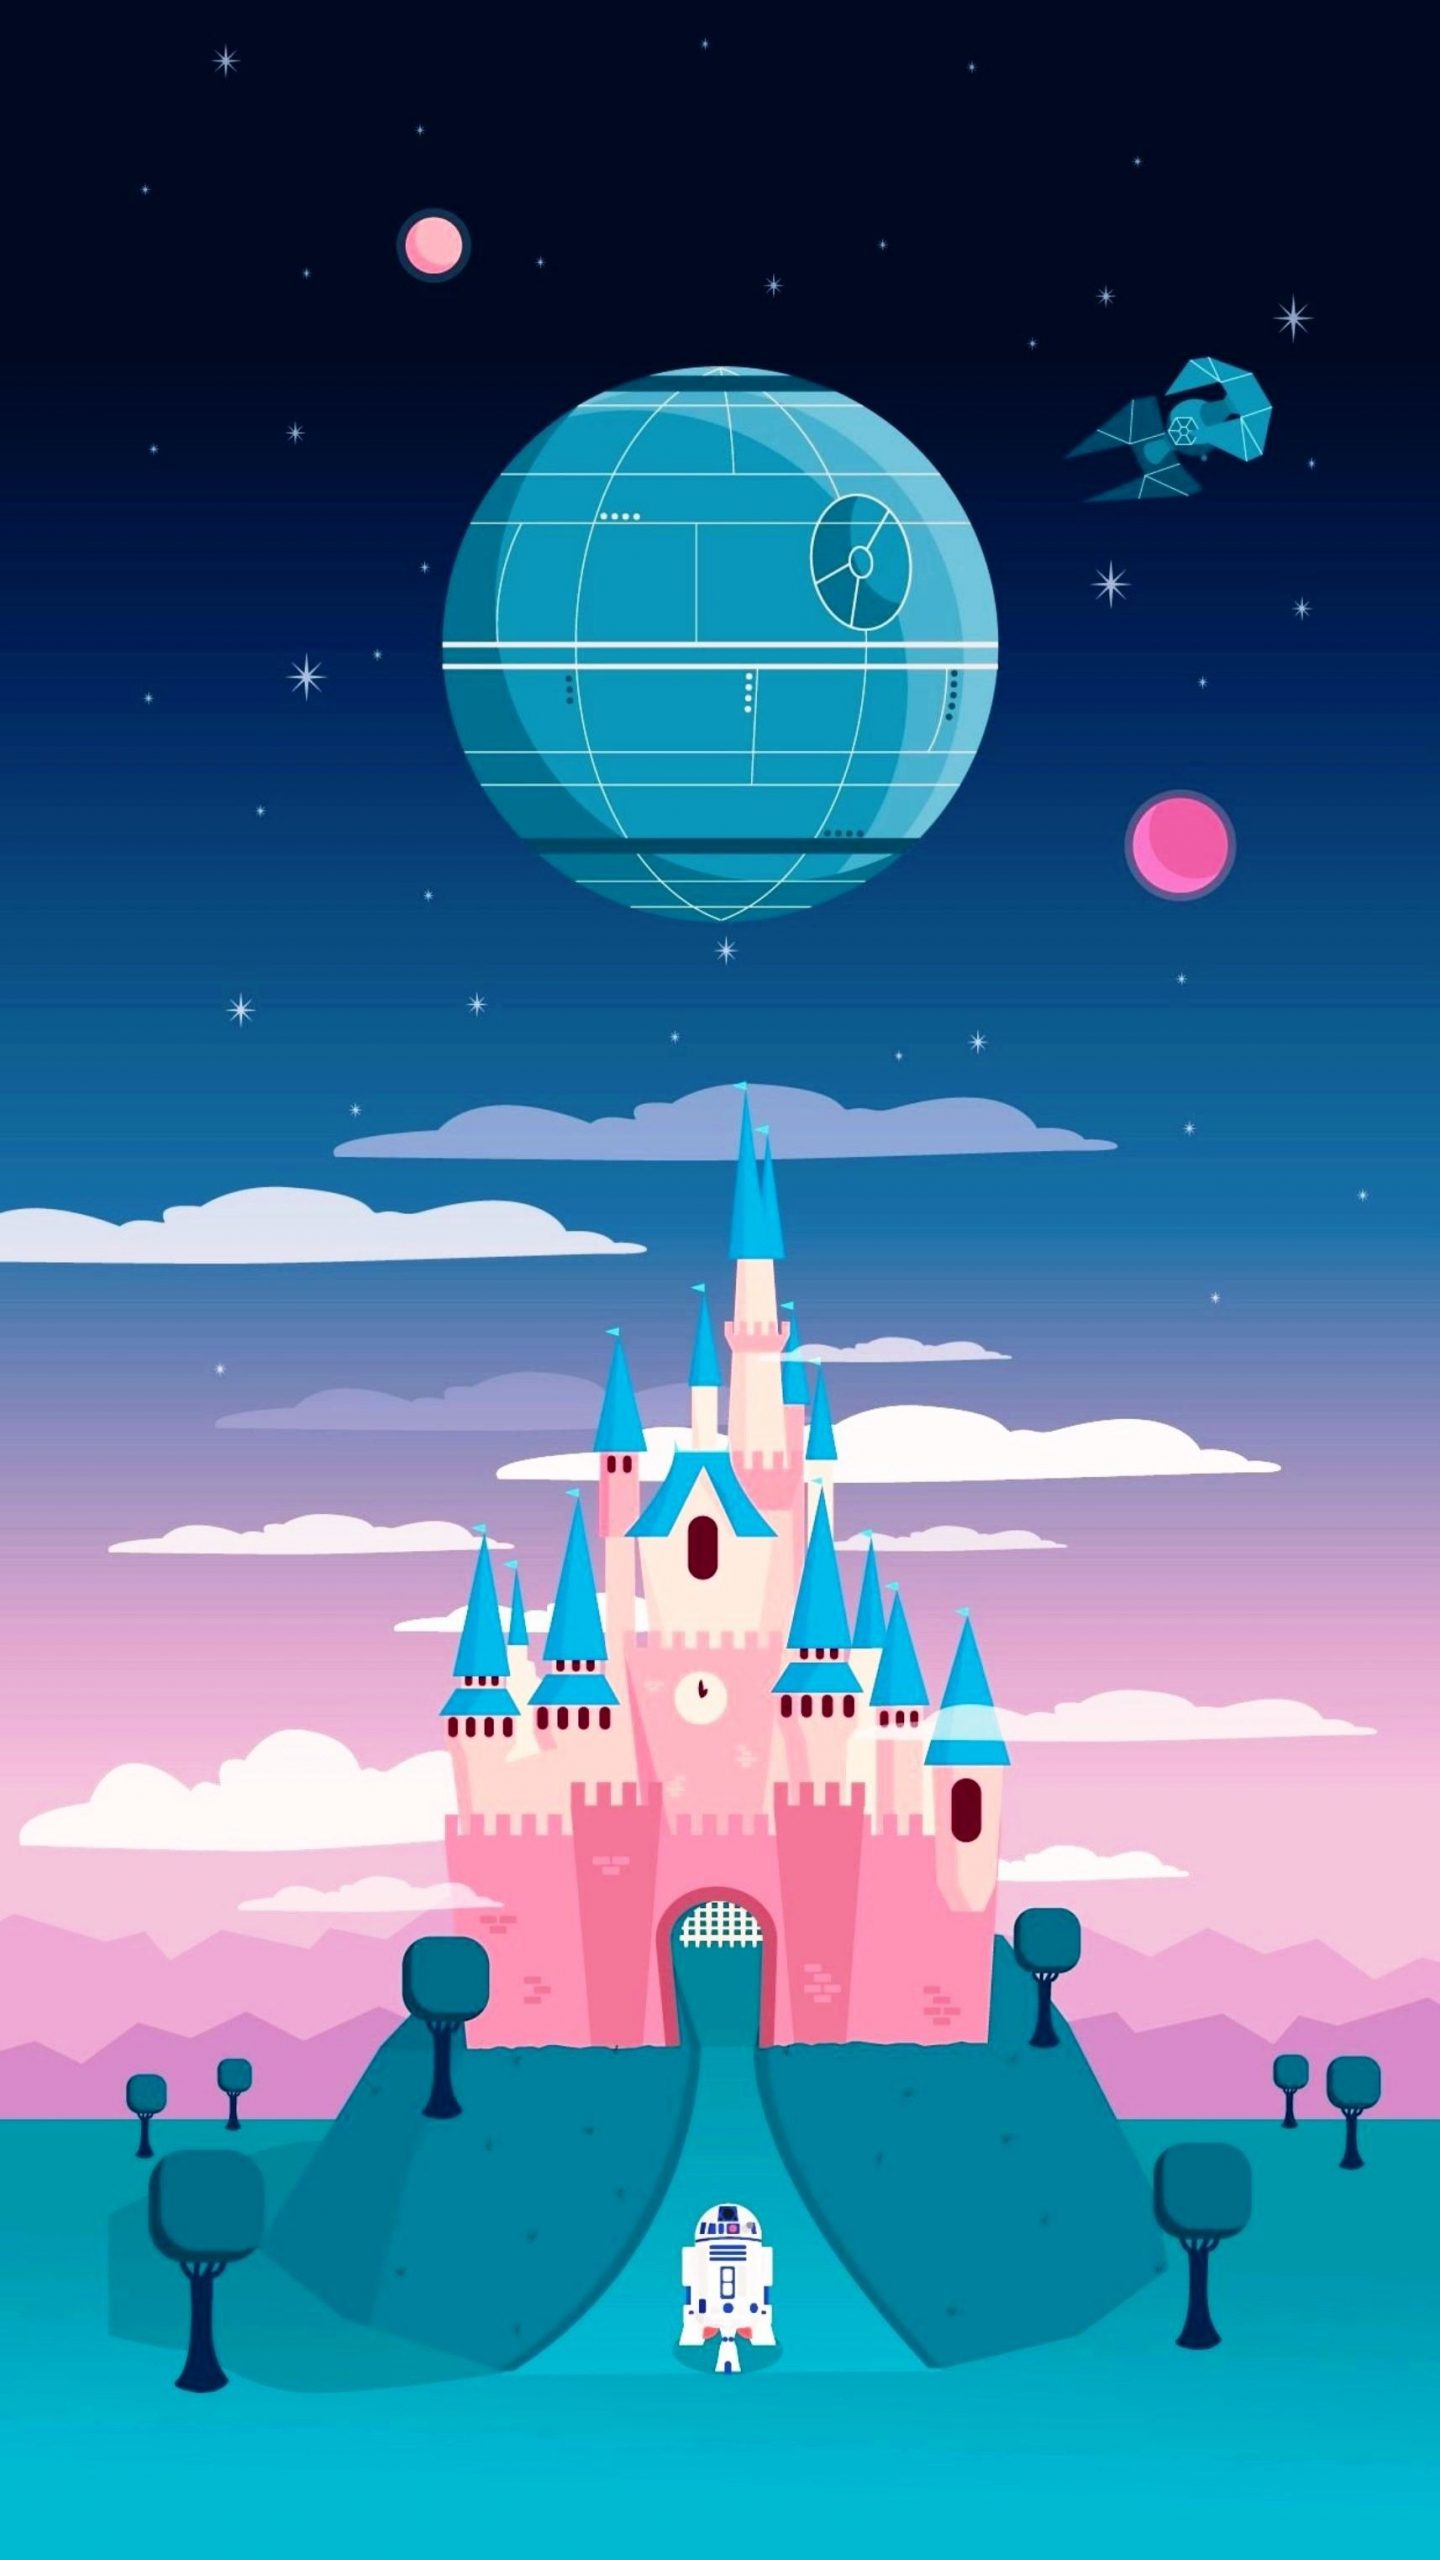 Fondos de pantalla de Disney, Wallpapers hd Gratis para PC, Android e iPhone